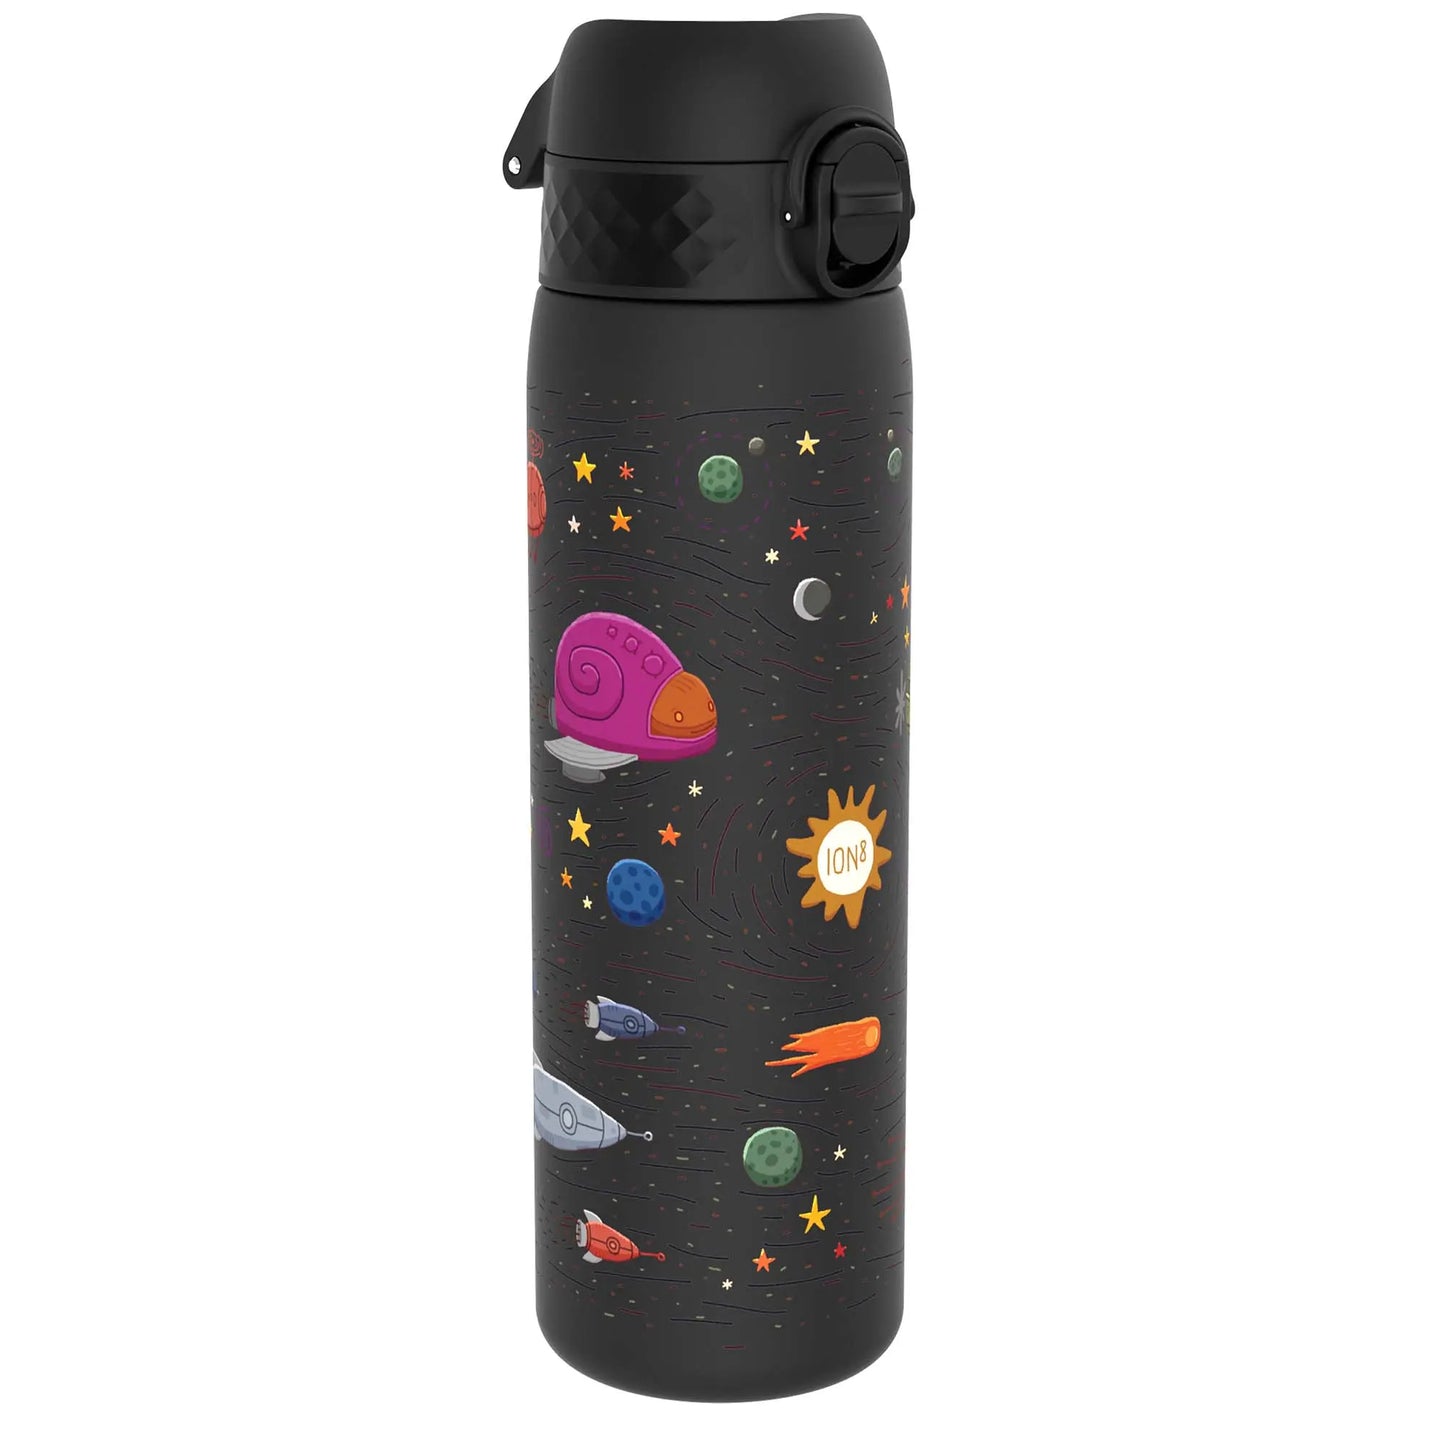 Leak Proof Slim Water Bottle, Recyclon™, Spaceships, 500ml (18oz) Ion8